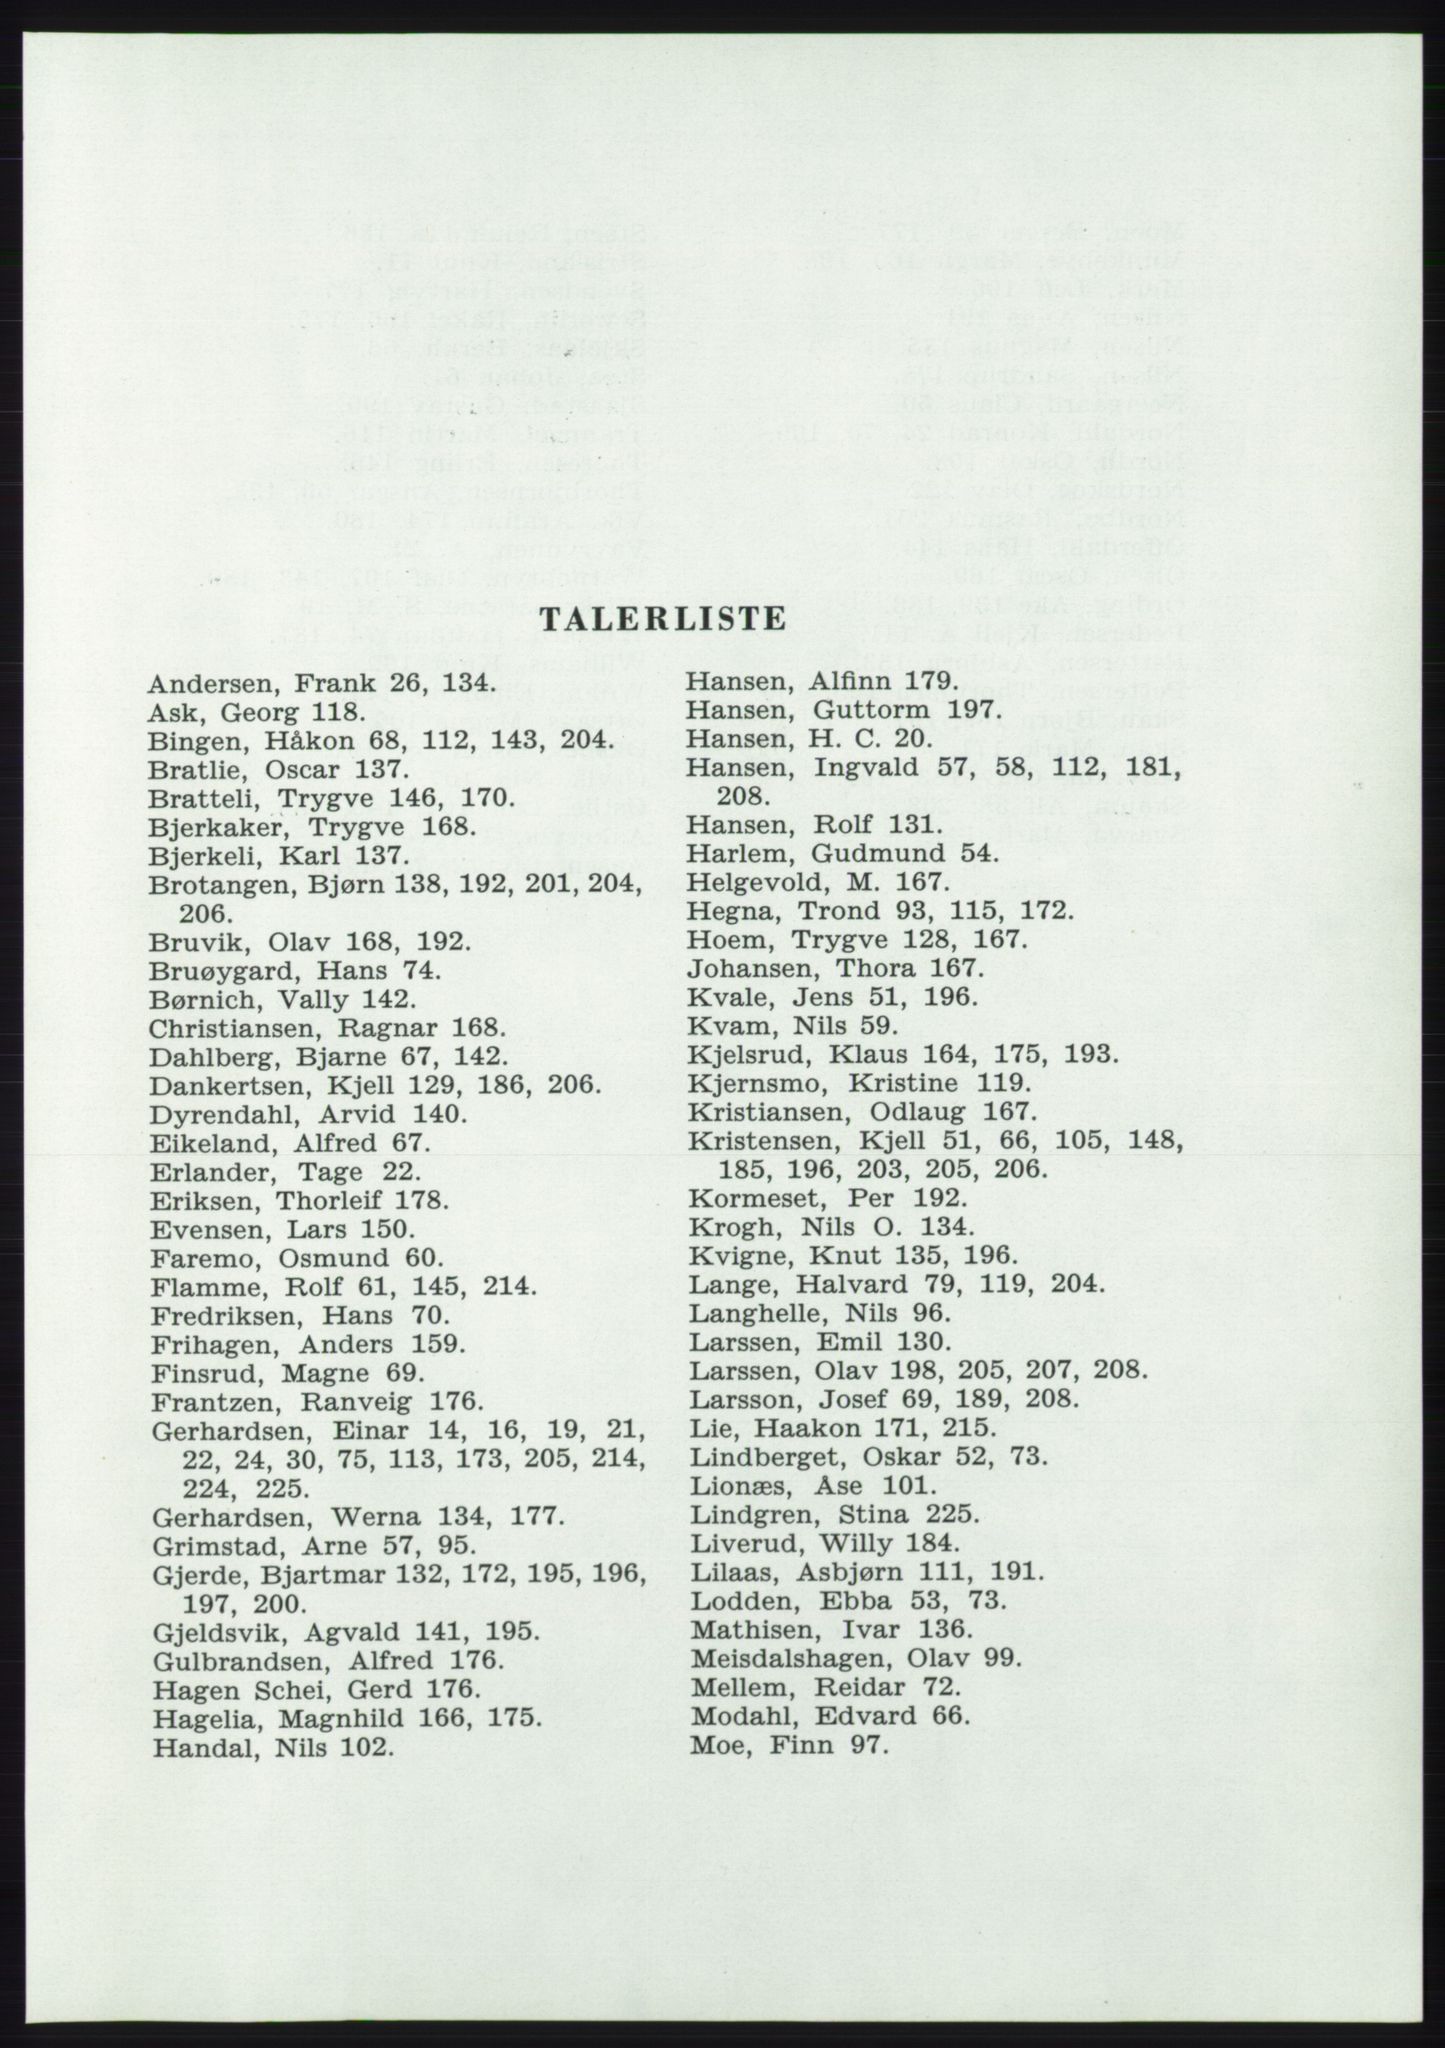 Det norske Arbeiderparti - publikasjoner, AAB/-/-/-: Protokoll over forhandlingene på det 37. ordinære landsmøte 7.-9. mai 1959 i Oslo, 1959